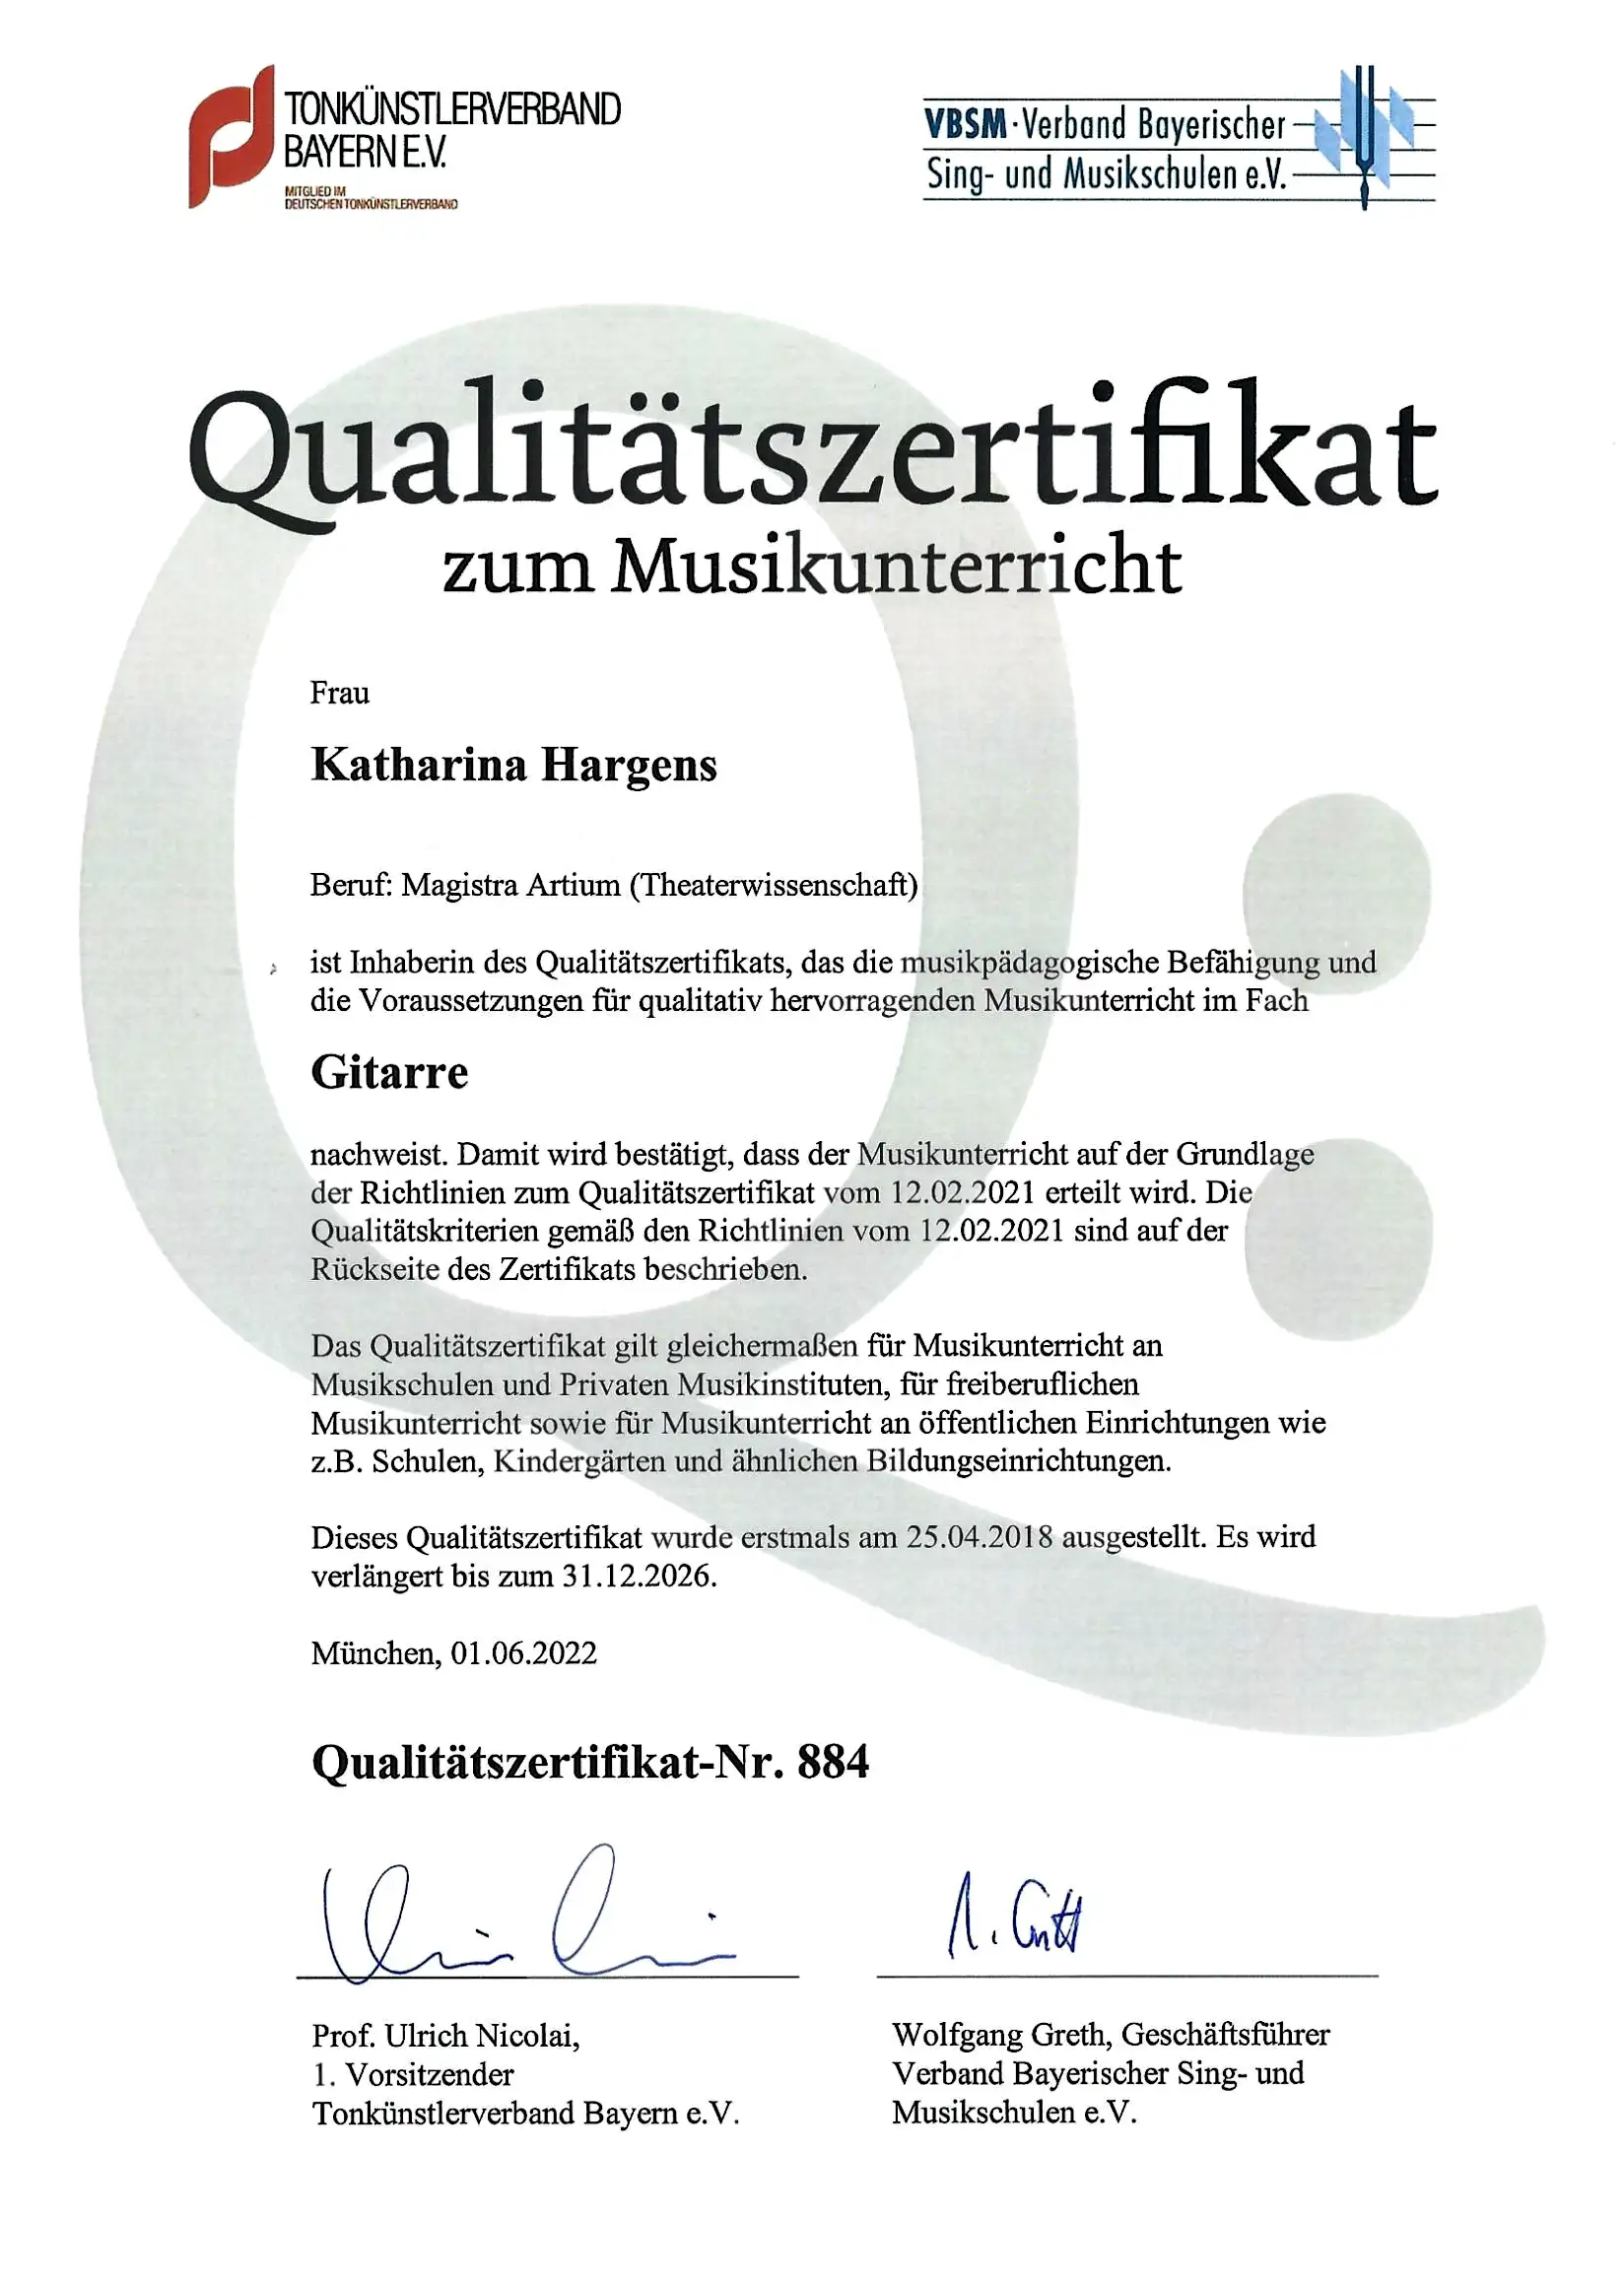 Qualitätszertifikat Katharina Hargens